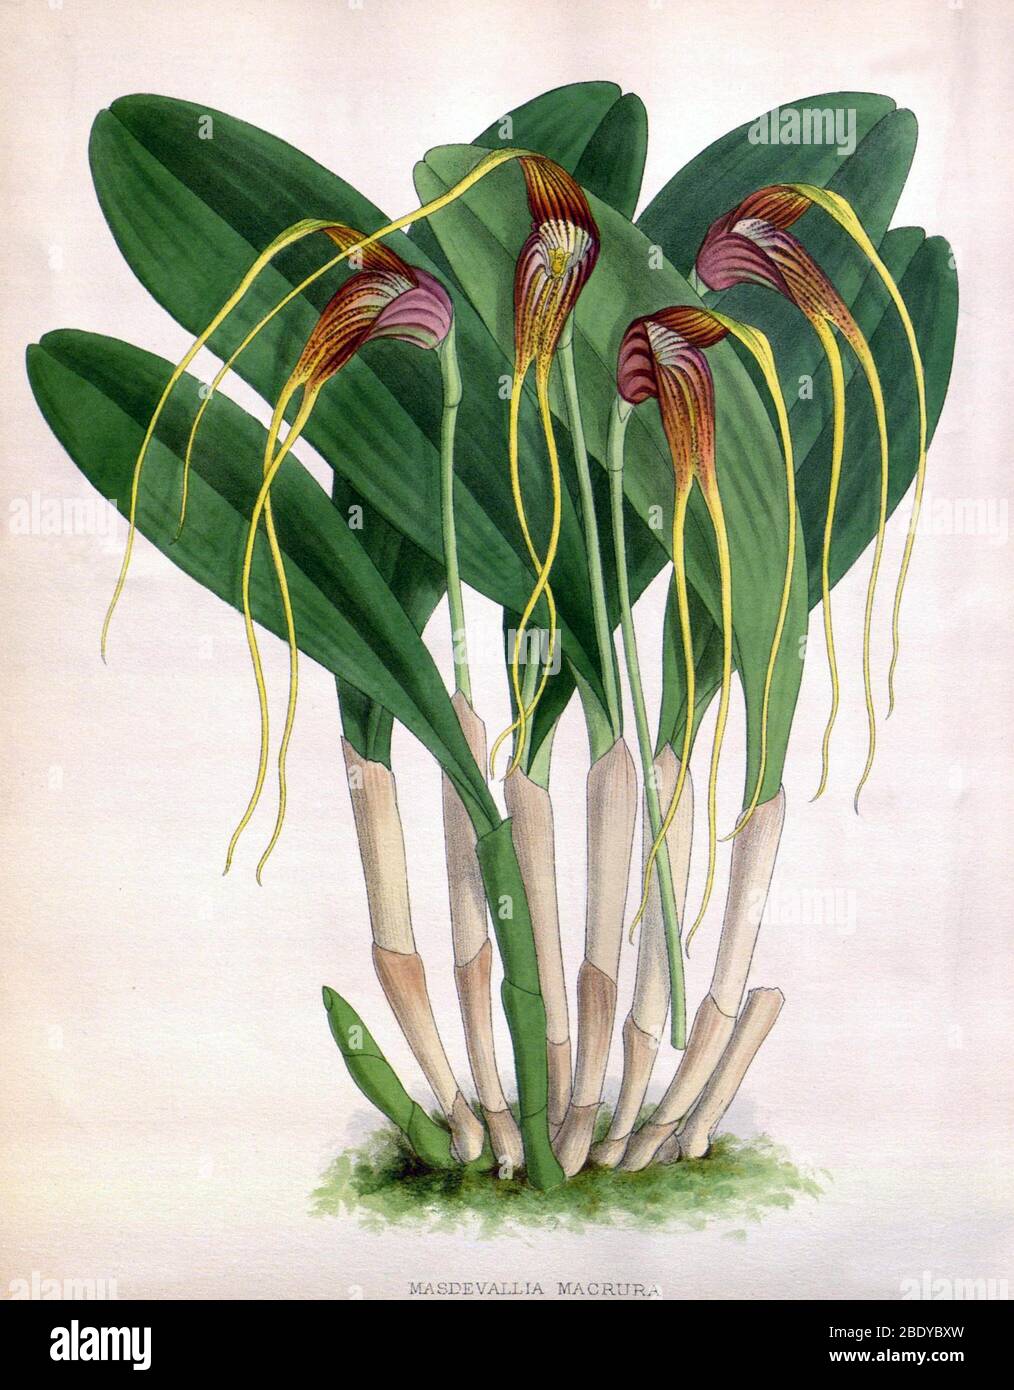 Orchid, Masdevallia macrura, 1891 Stock Photo